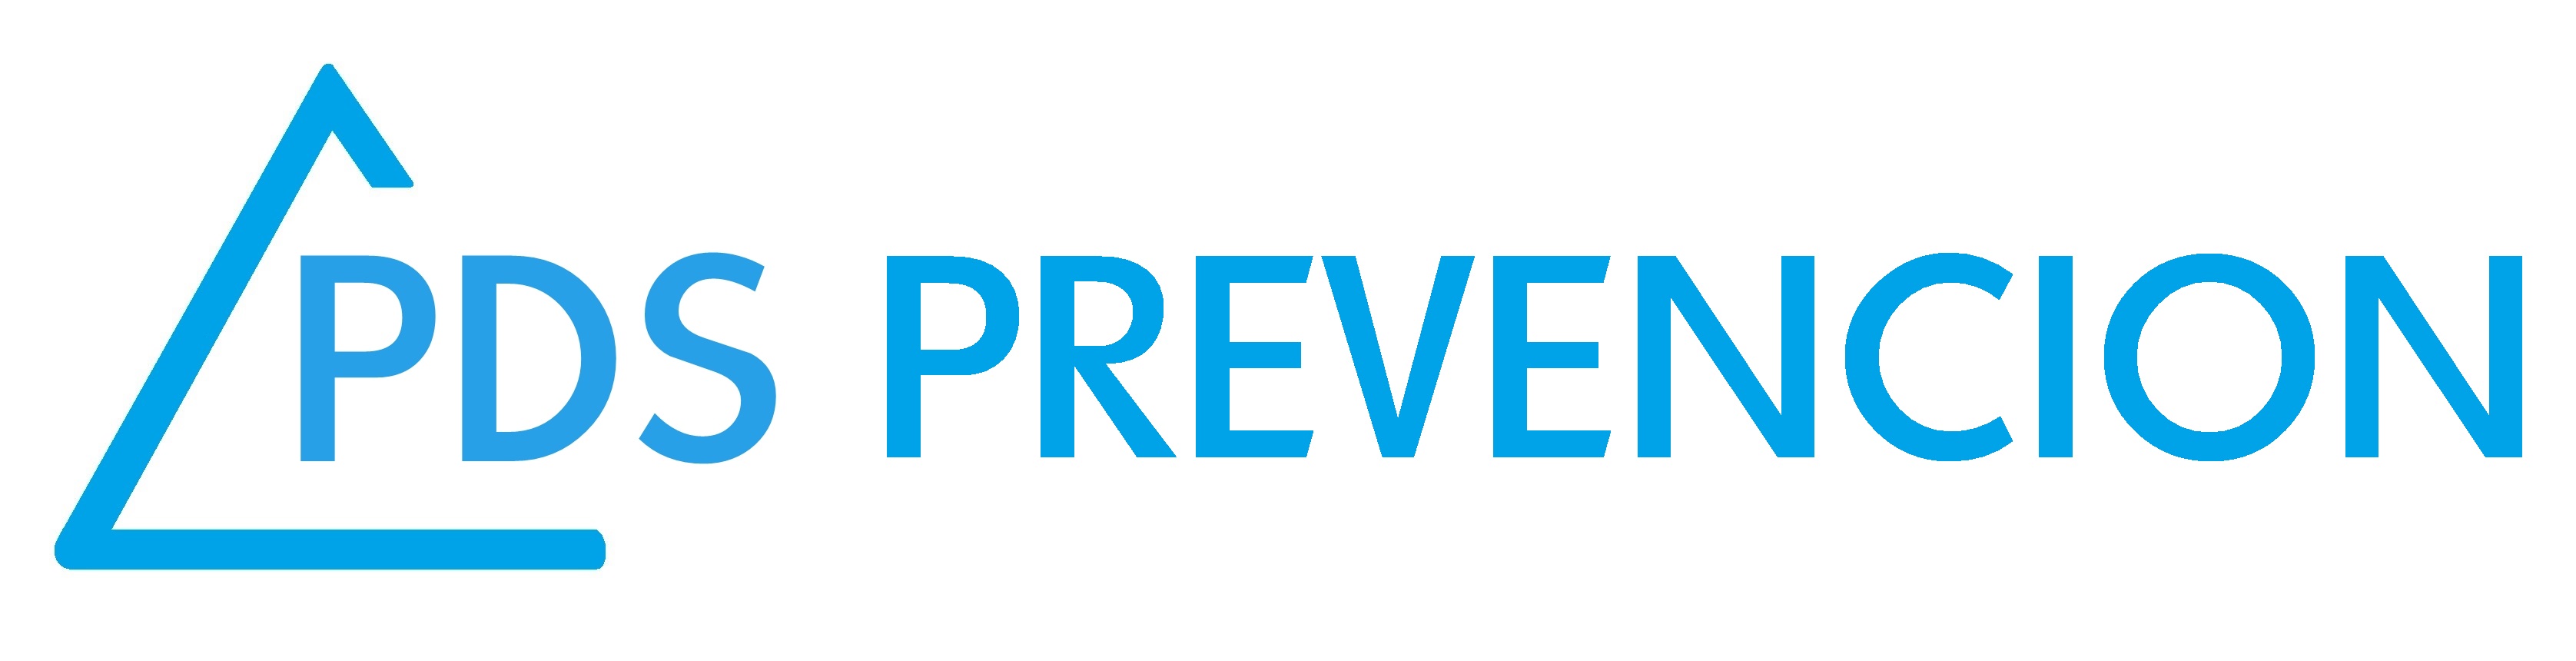 PDS PREVENCION Logo